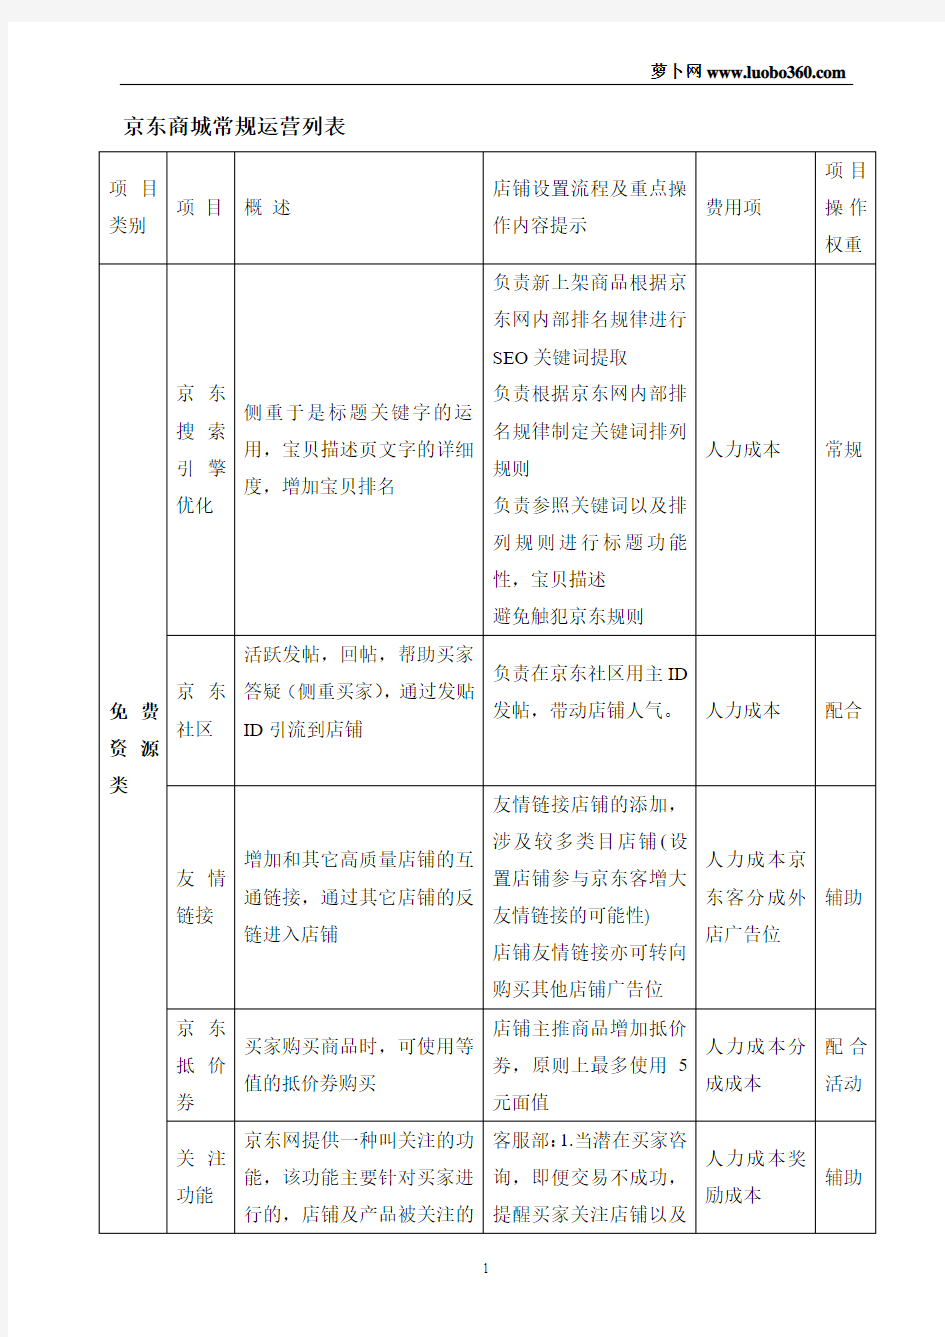 京东商城常规运营列表(运营必备)